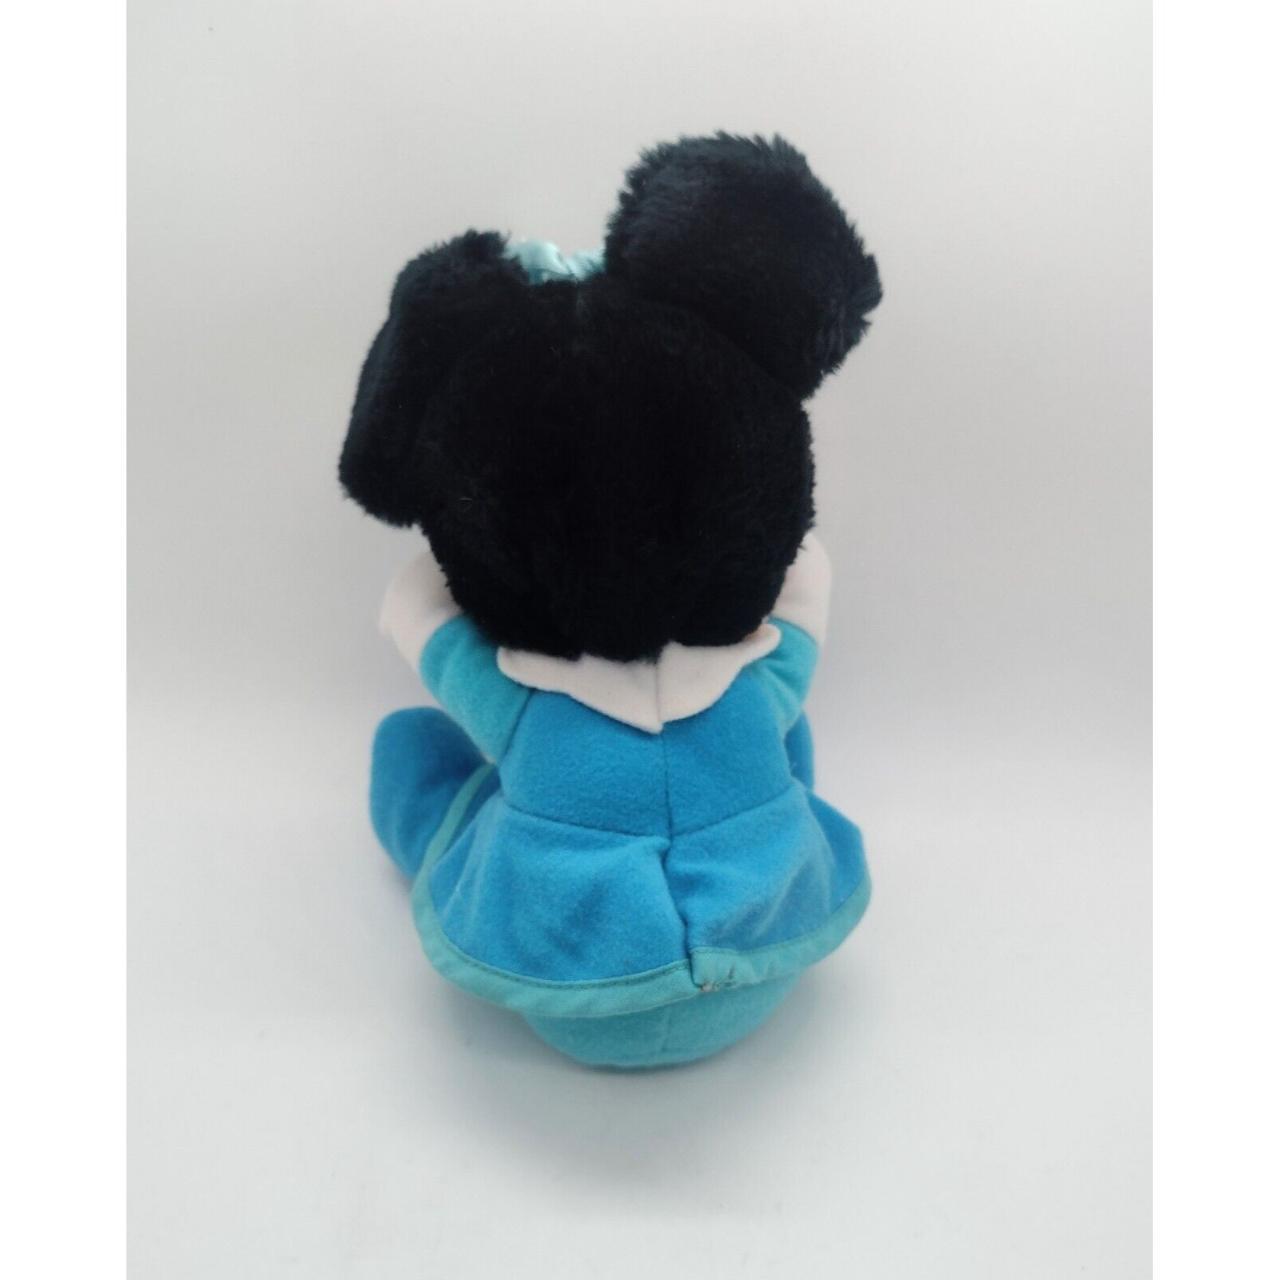 Vintage Mickeys Christmas Carol Minnie Mouse Stuffed... - Depop